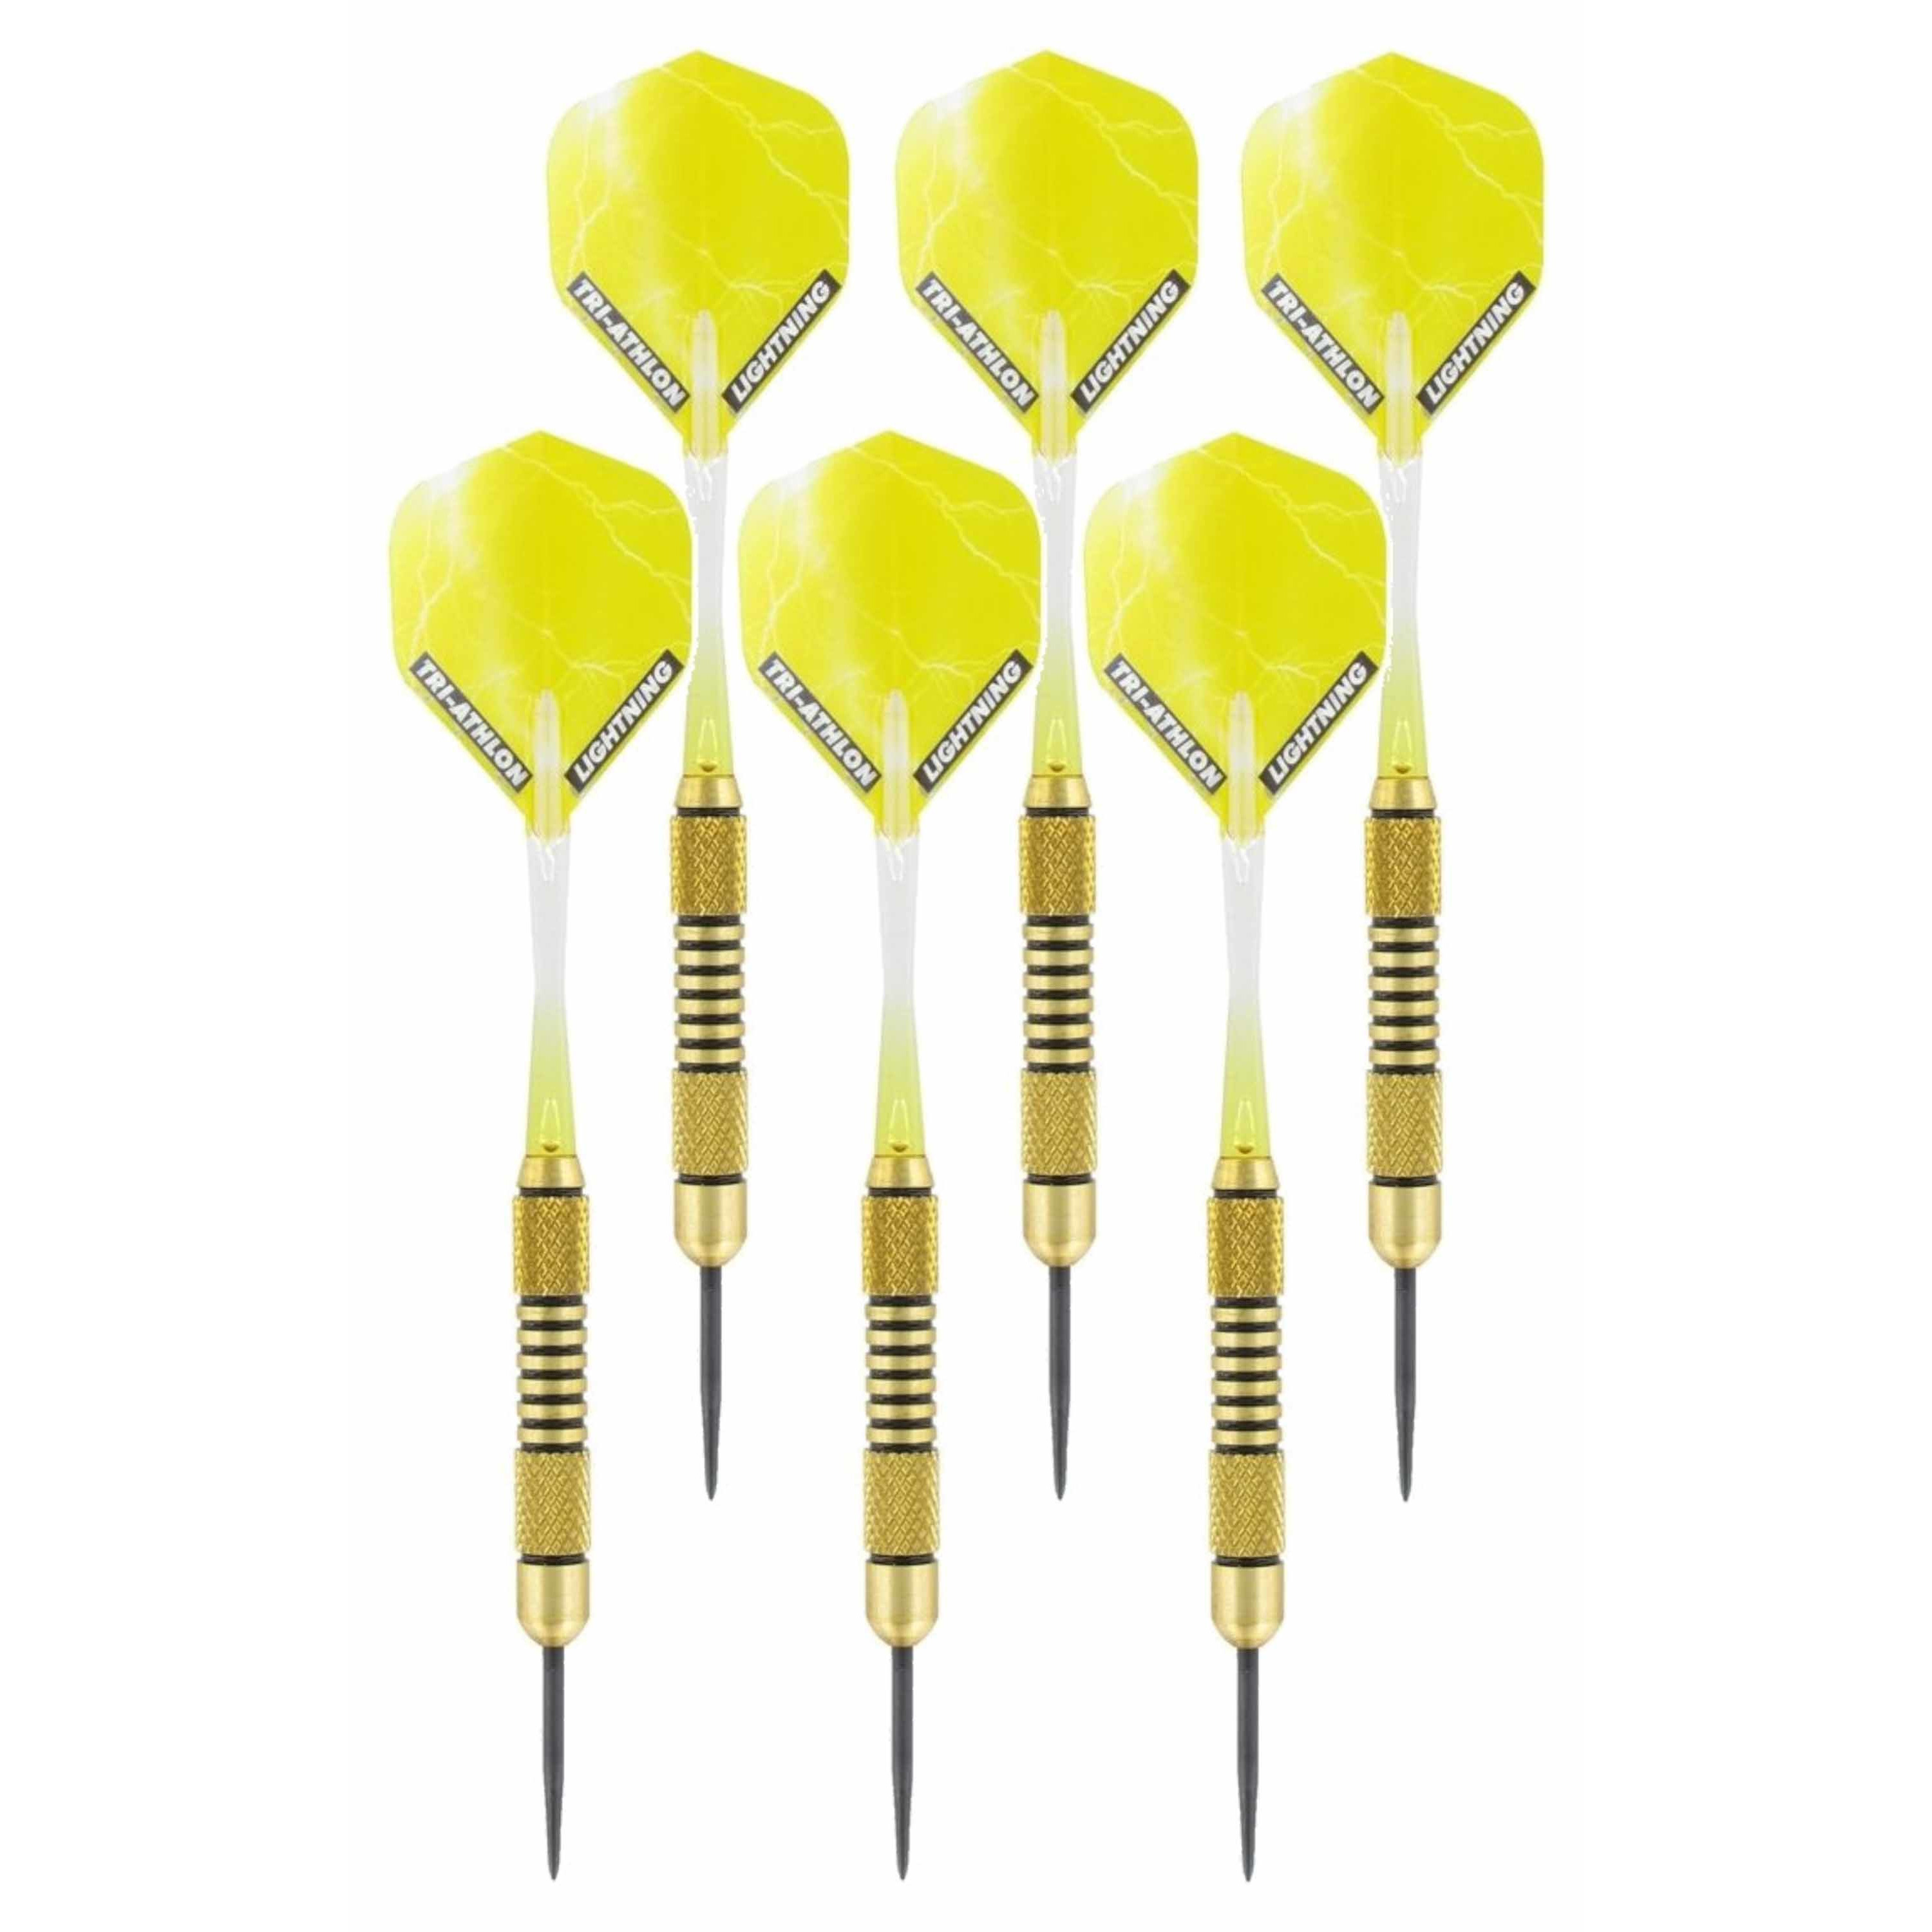 2x Set van dartpijltjes Speedy Yellow Brass met Metallic Lightning flites 19 grams